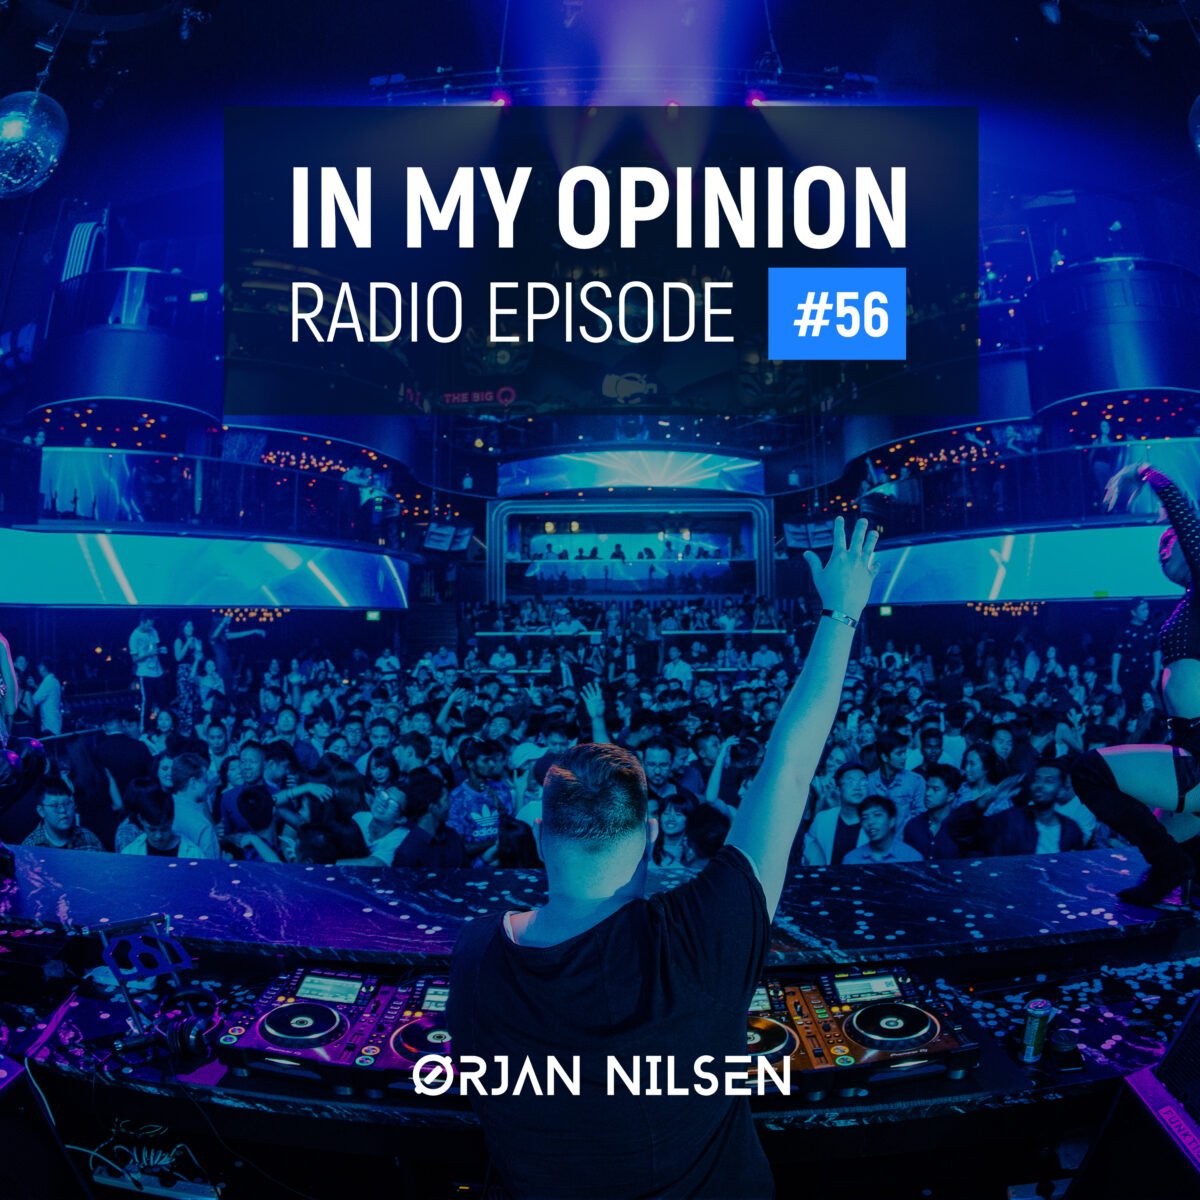 Orjan Nilsen - In My Opinion Radio (Episode 052)Orjan Nilsen - In My Opinion Radio (Episode 056)